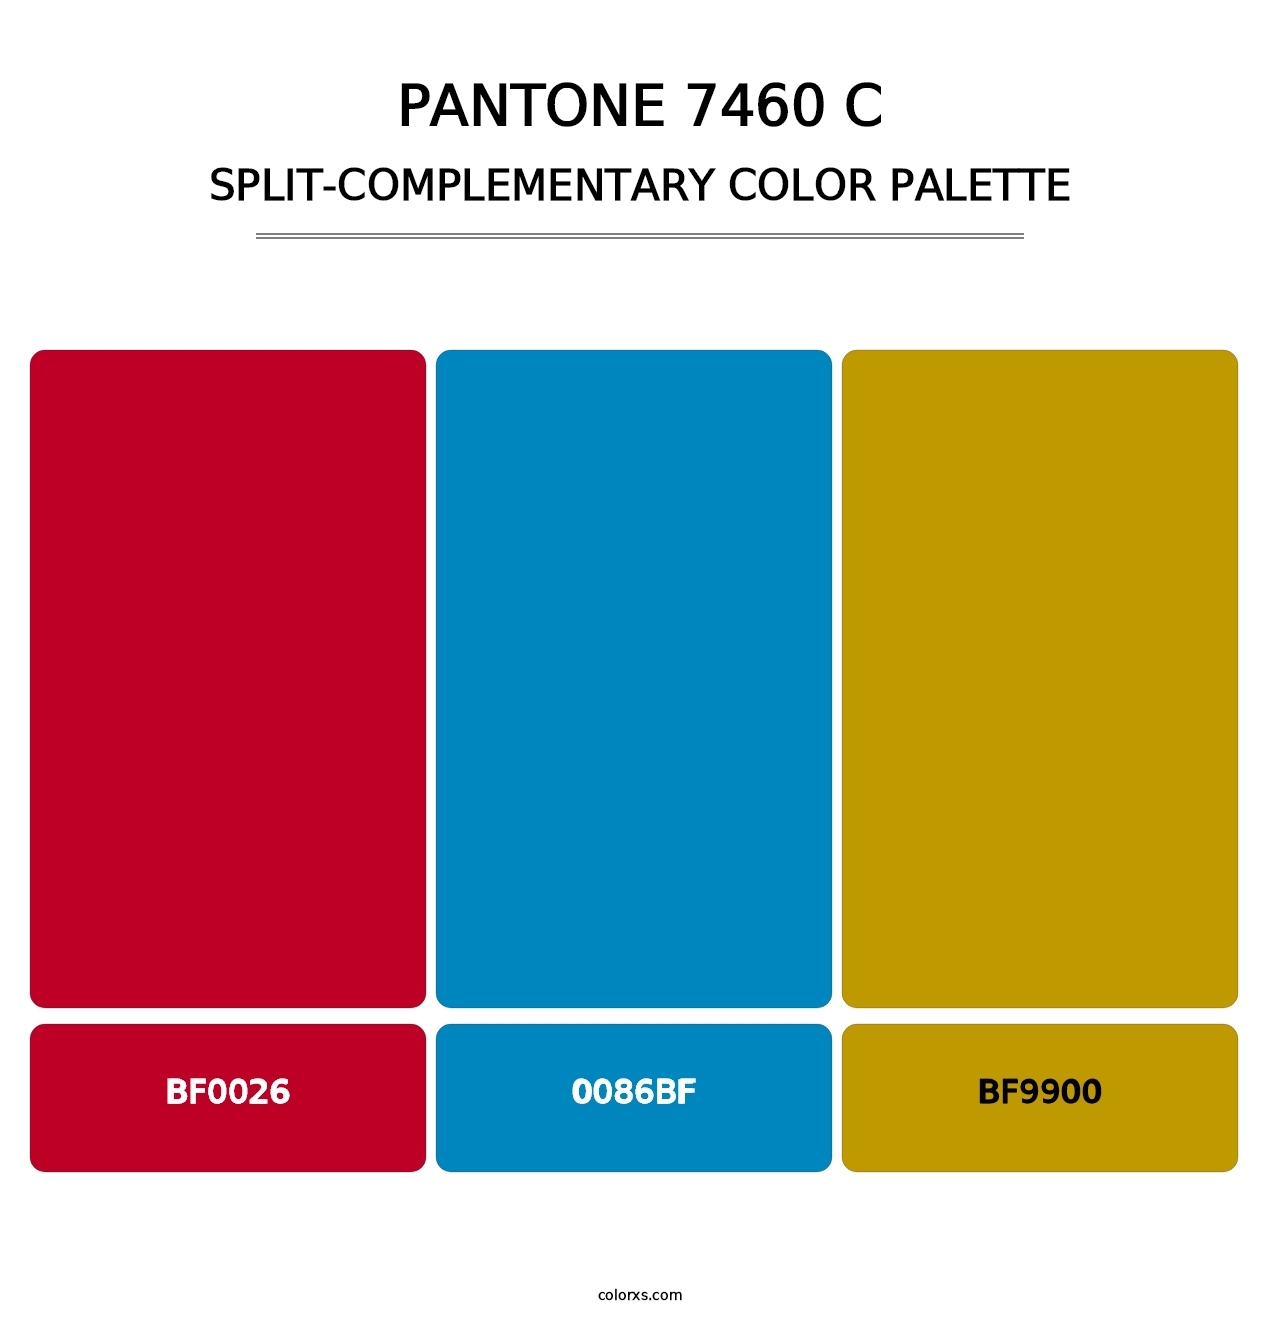 PANTONE 7460 C - Split-Complementary Color Palette